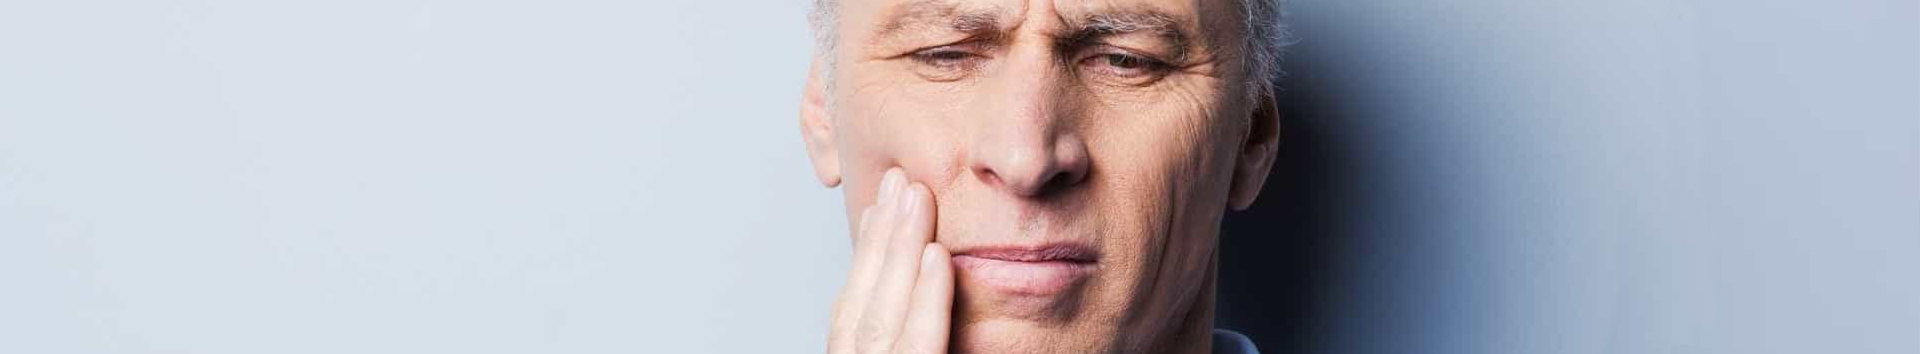 O que uma dor de dente pode causar? Corra para um Dentista!